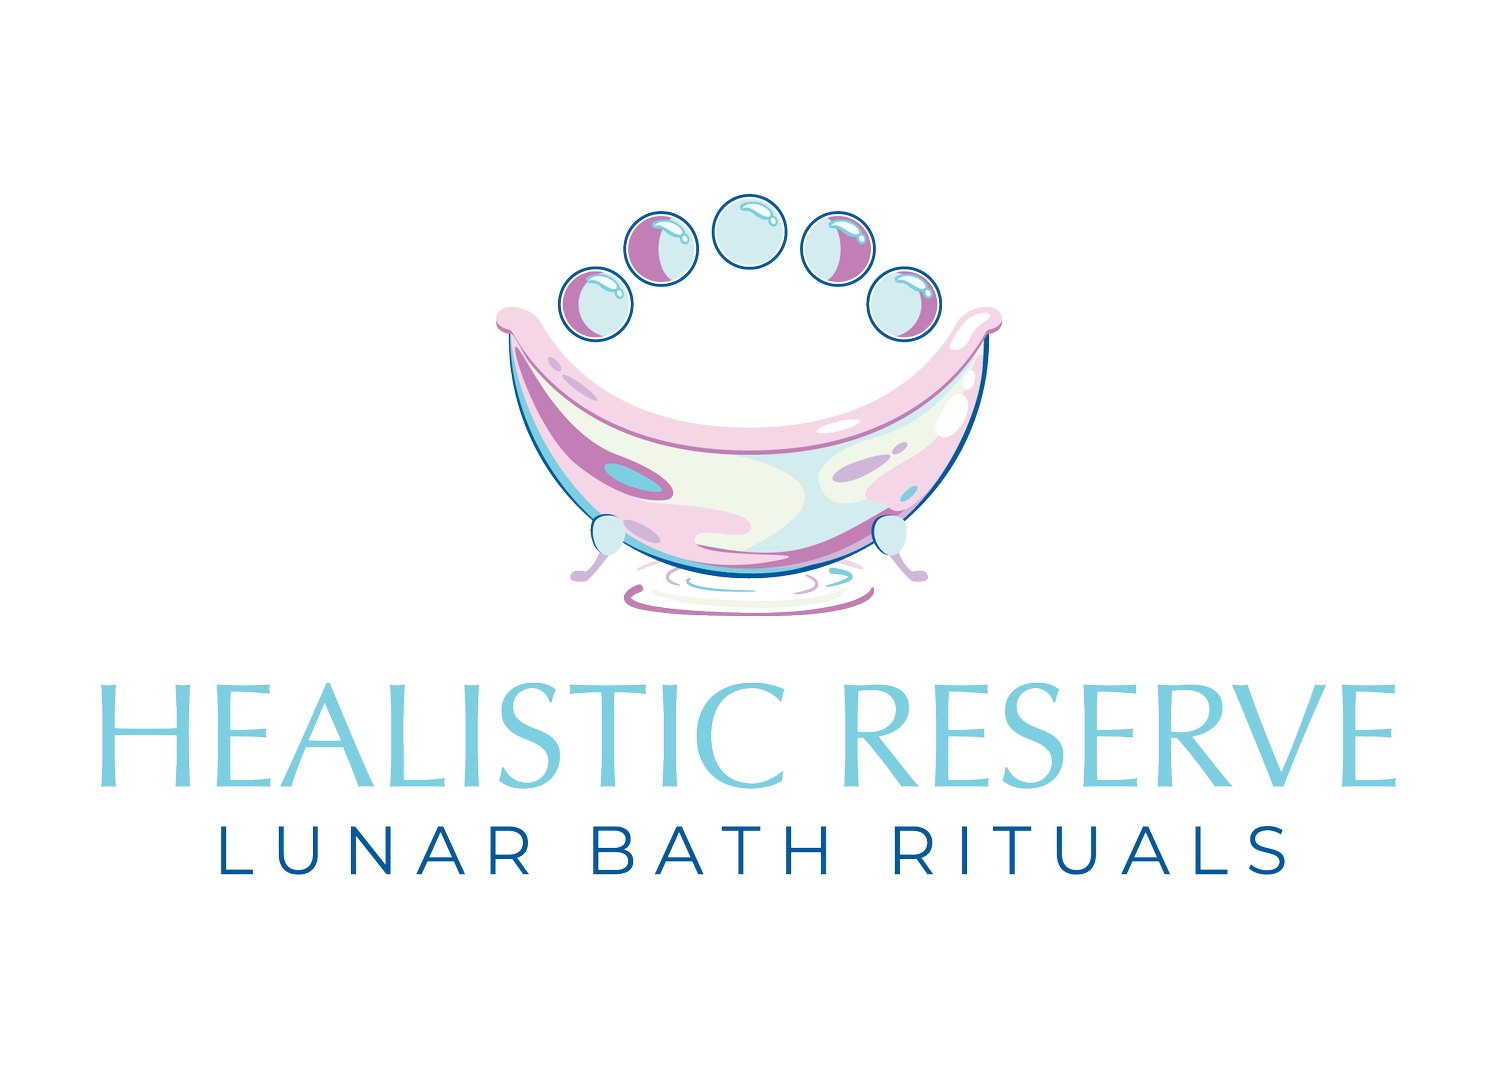 Healistic Reserve, Lunar Bath Rituals